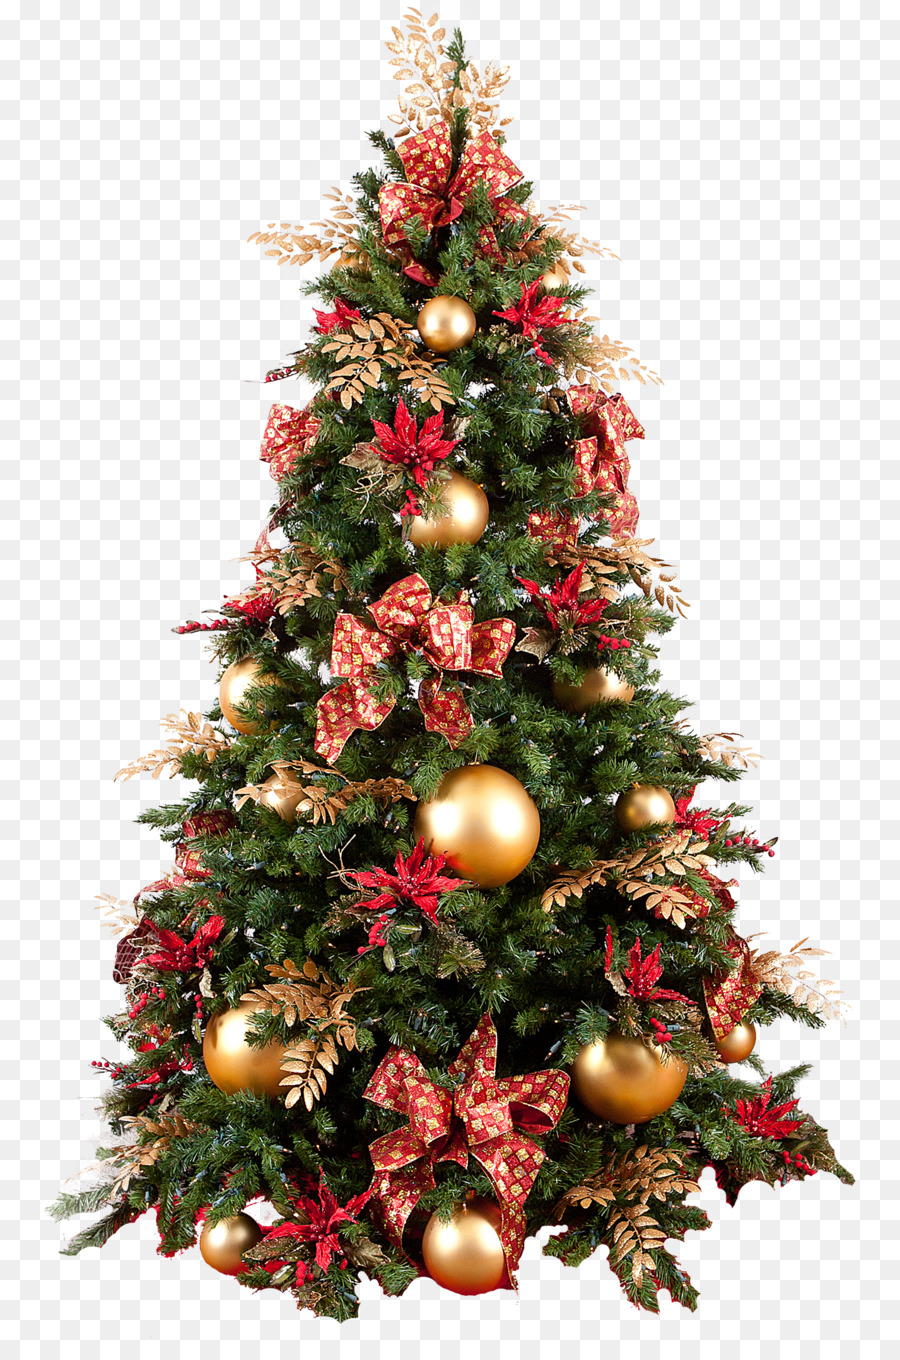 Christmas tree Christmas decoration Christmas ornament - christmas tree png download - 1427*2141 - Free Transparent Christmas Tree png Download.